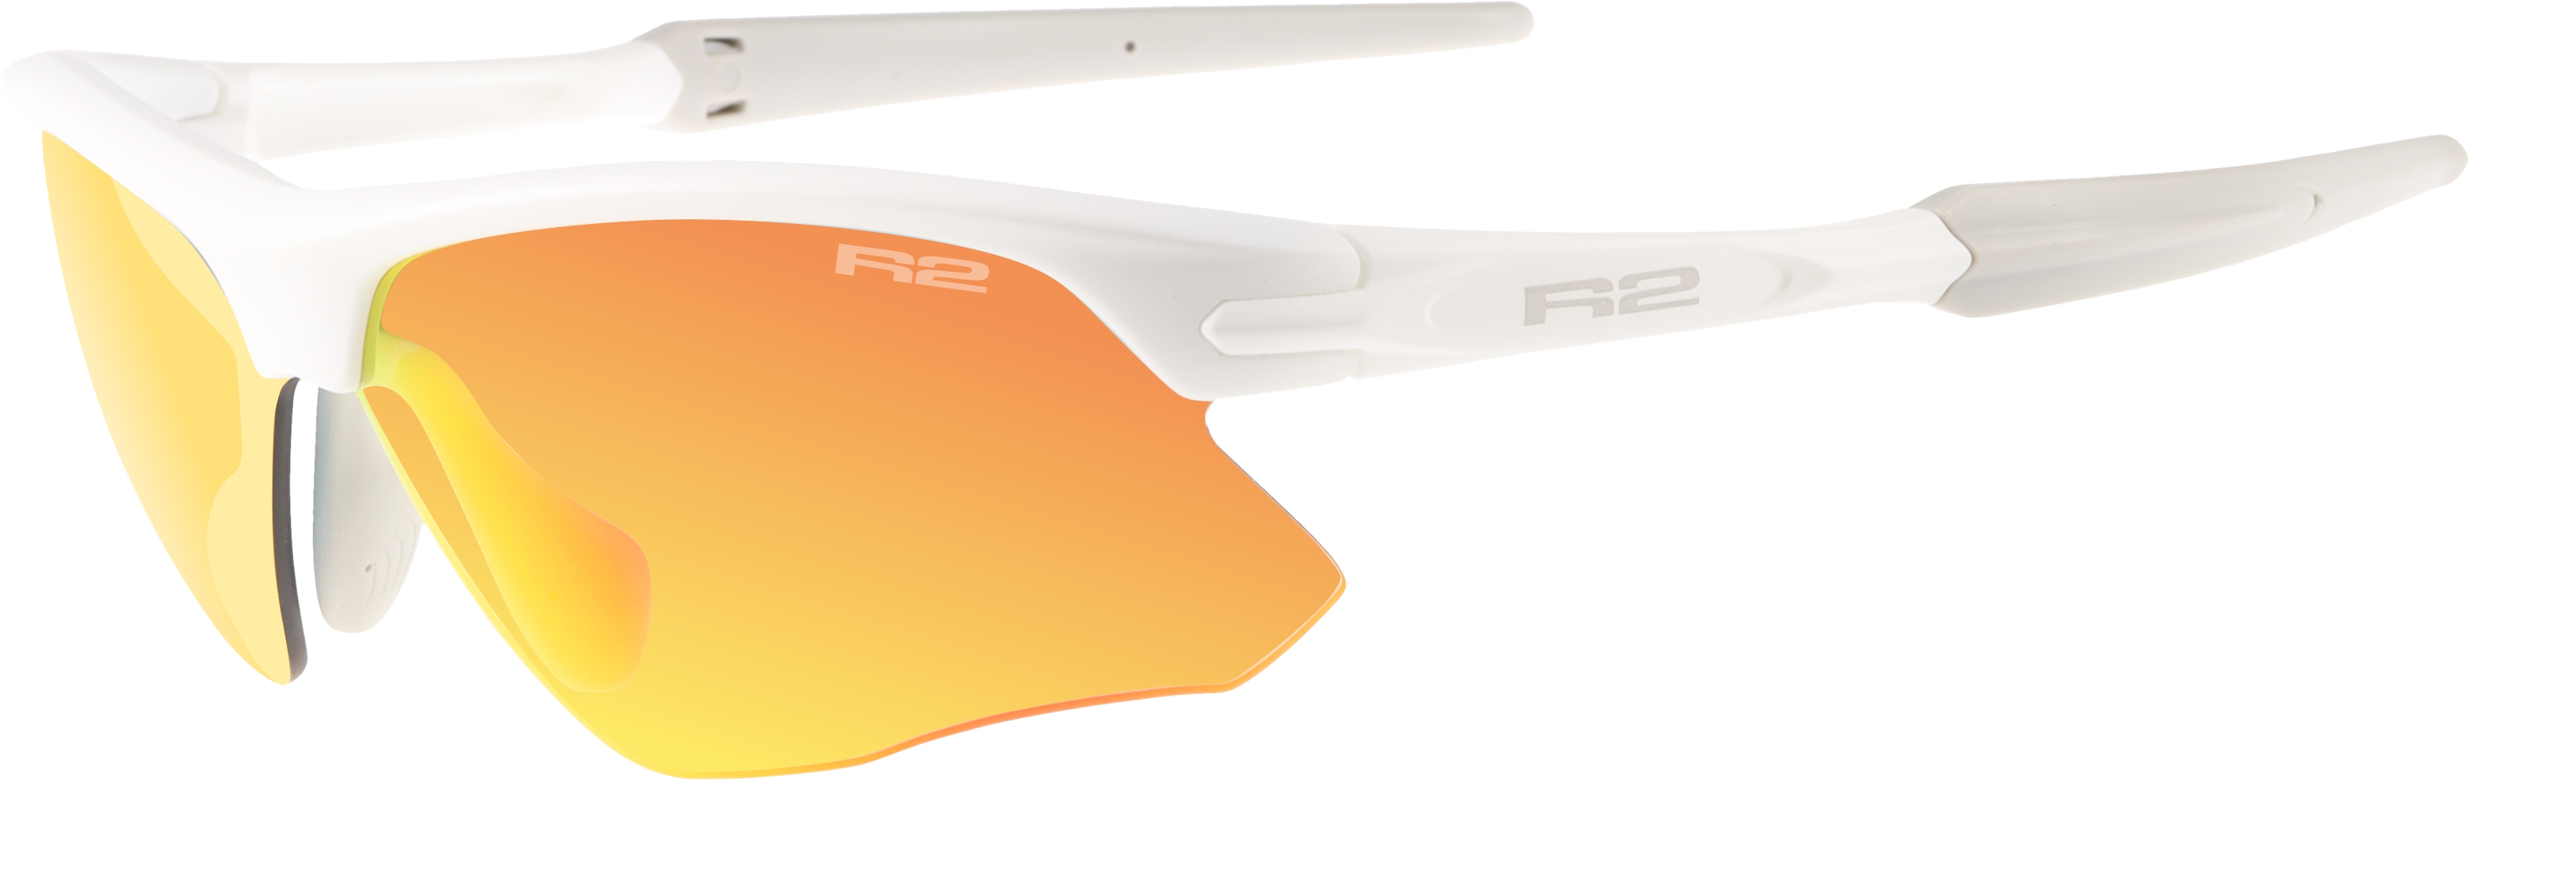 Sport sunglasses R2 KICK AT109G